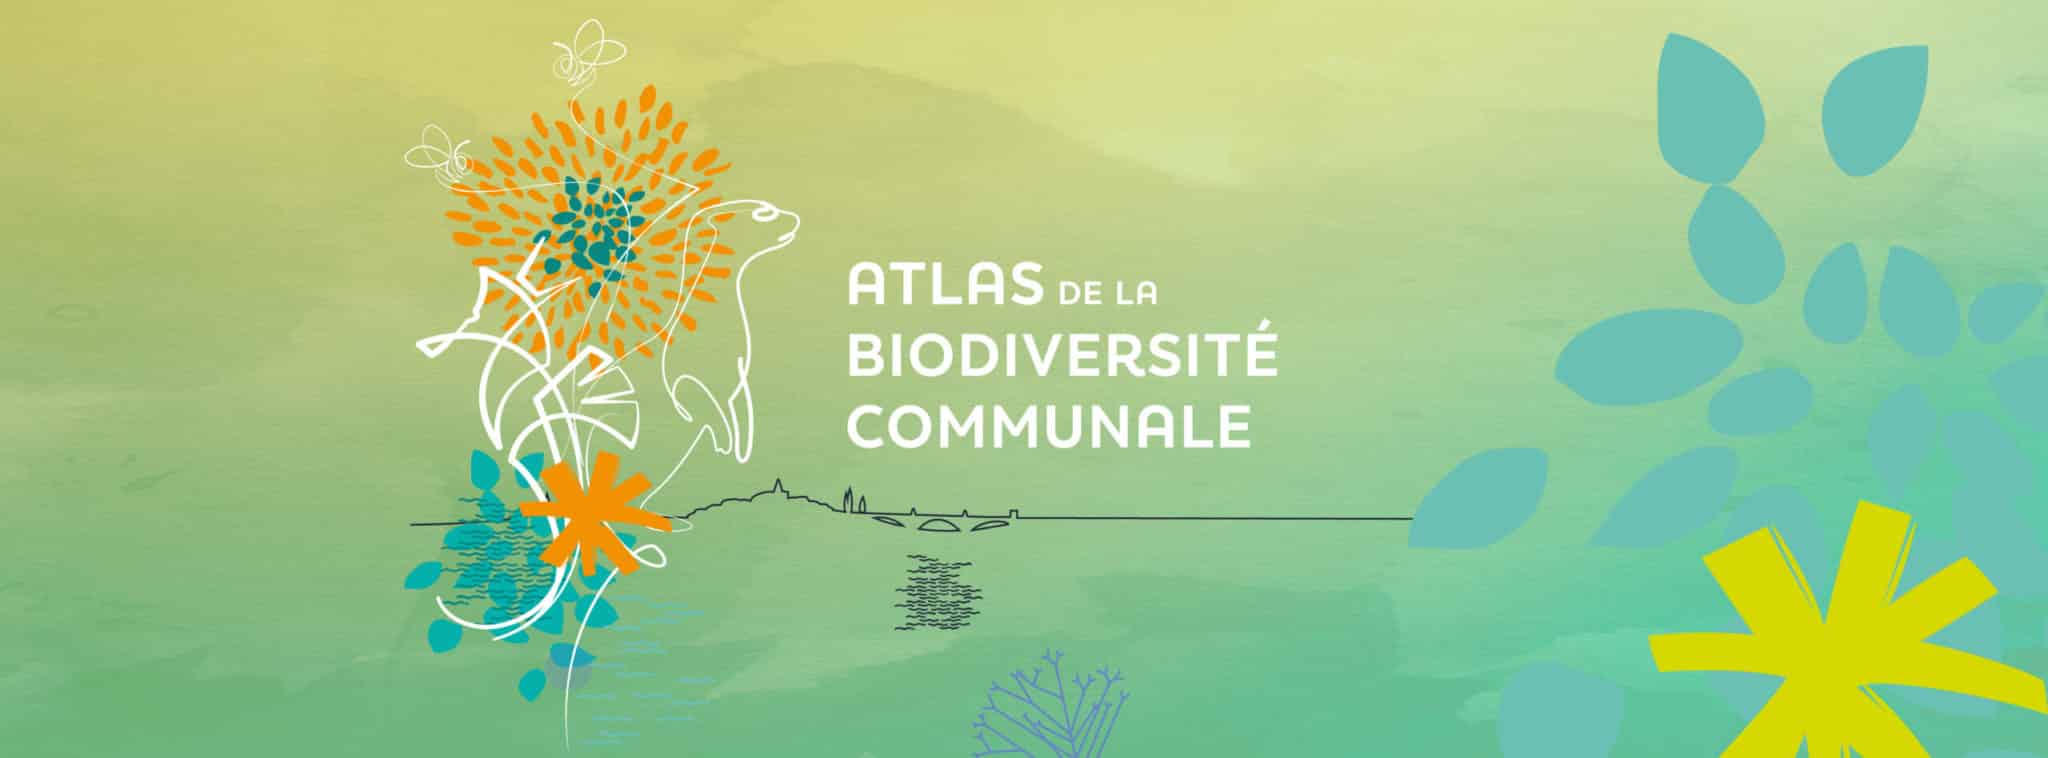 ABC atlas biodiversité